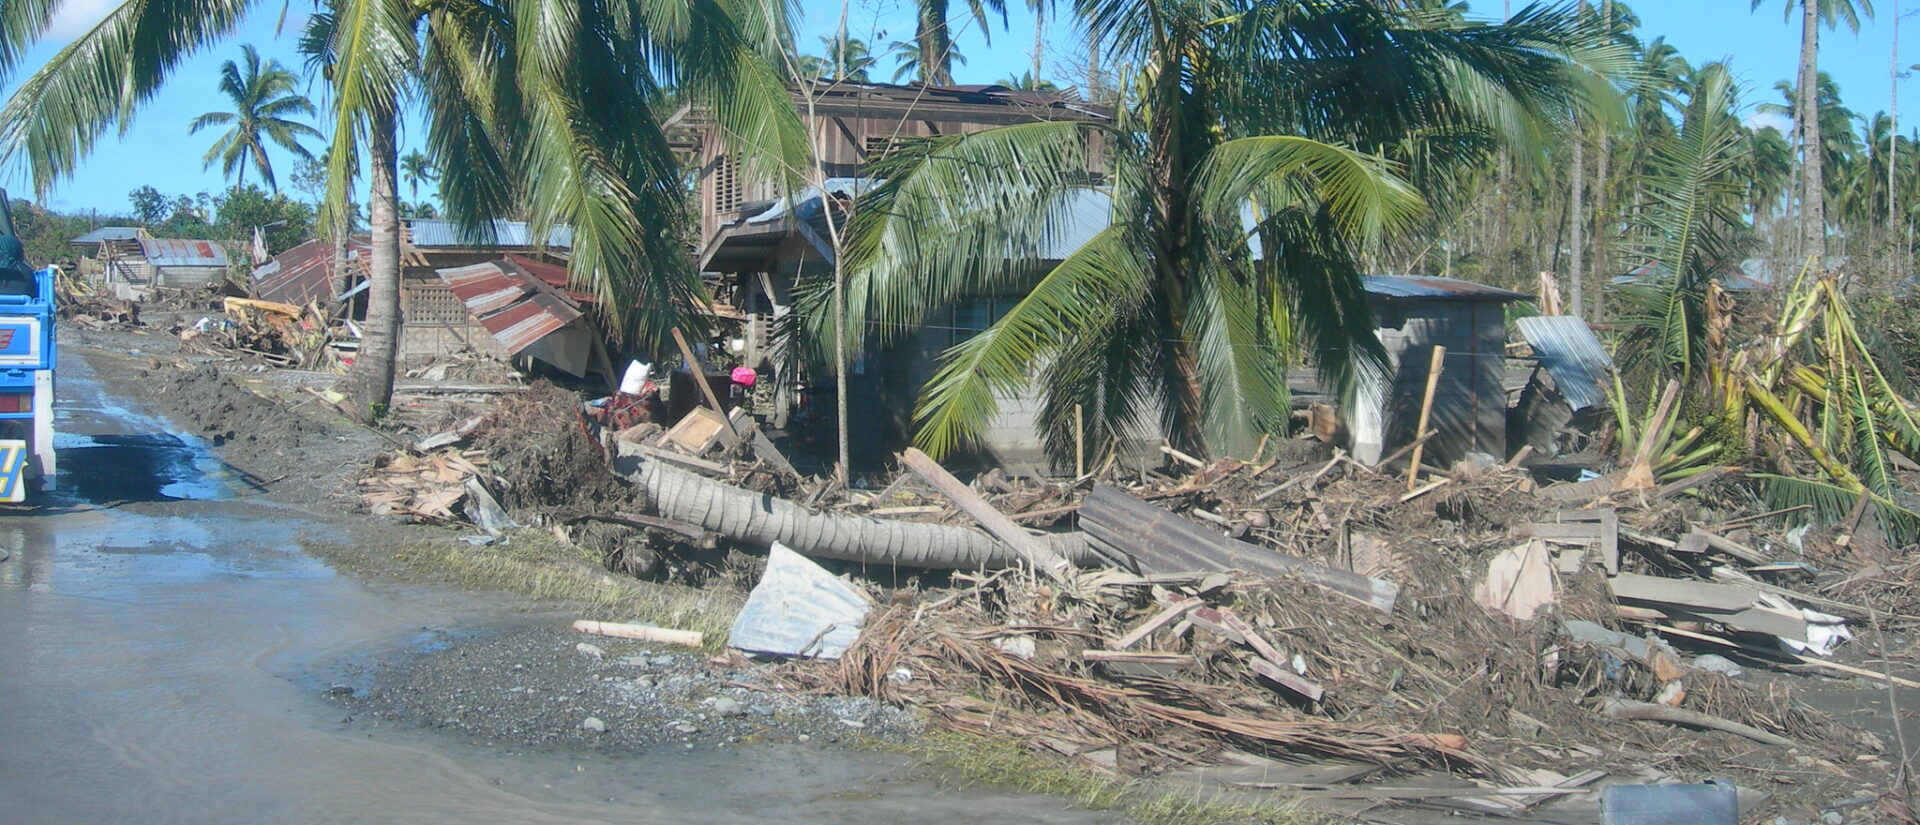 Aux Philippines, le typhon Phanfone a fait de nombreux dégâts | Photo d'illustration © EU Civil Protection/Flickr/CC BY-NC-ND 2.0